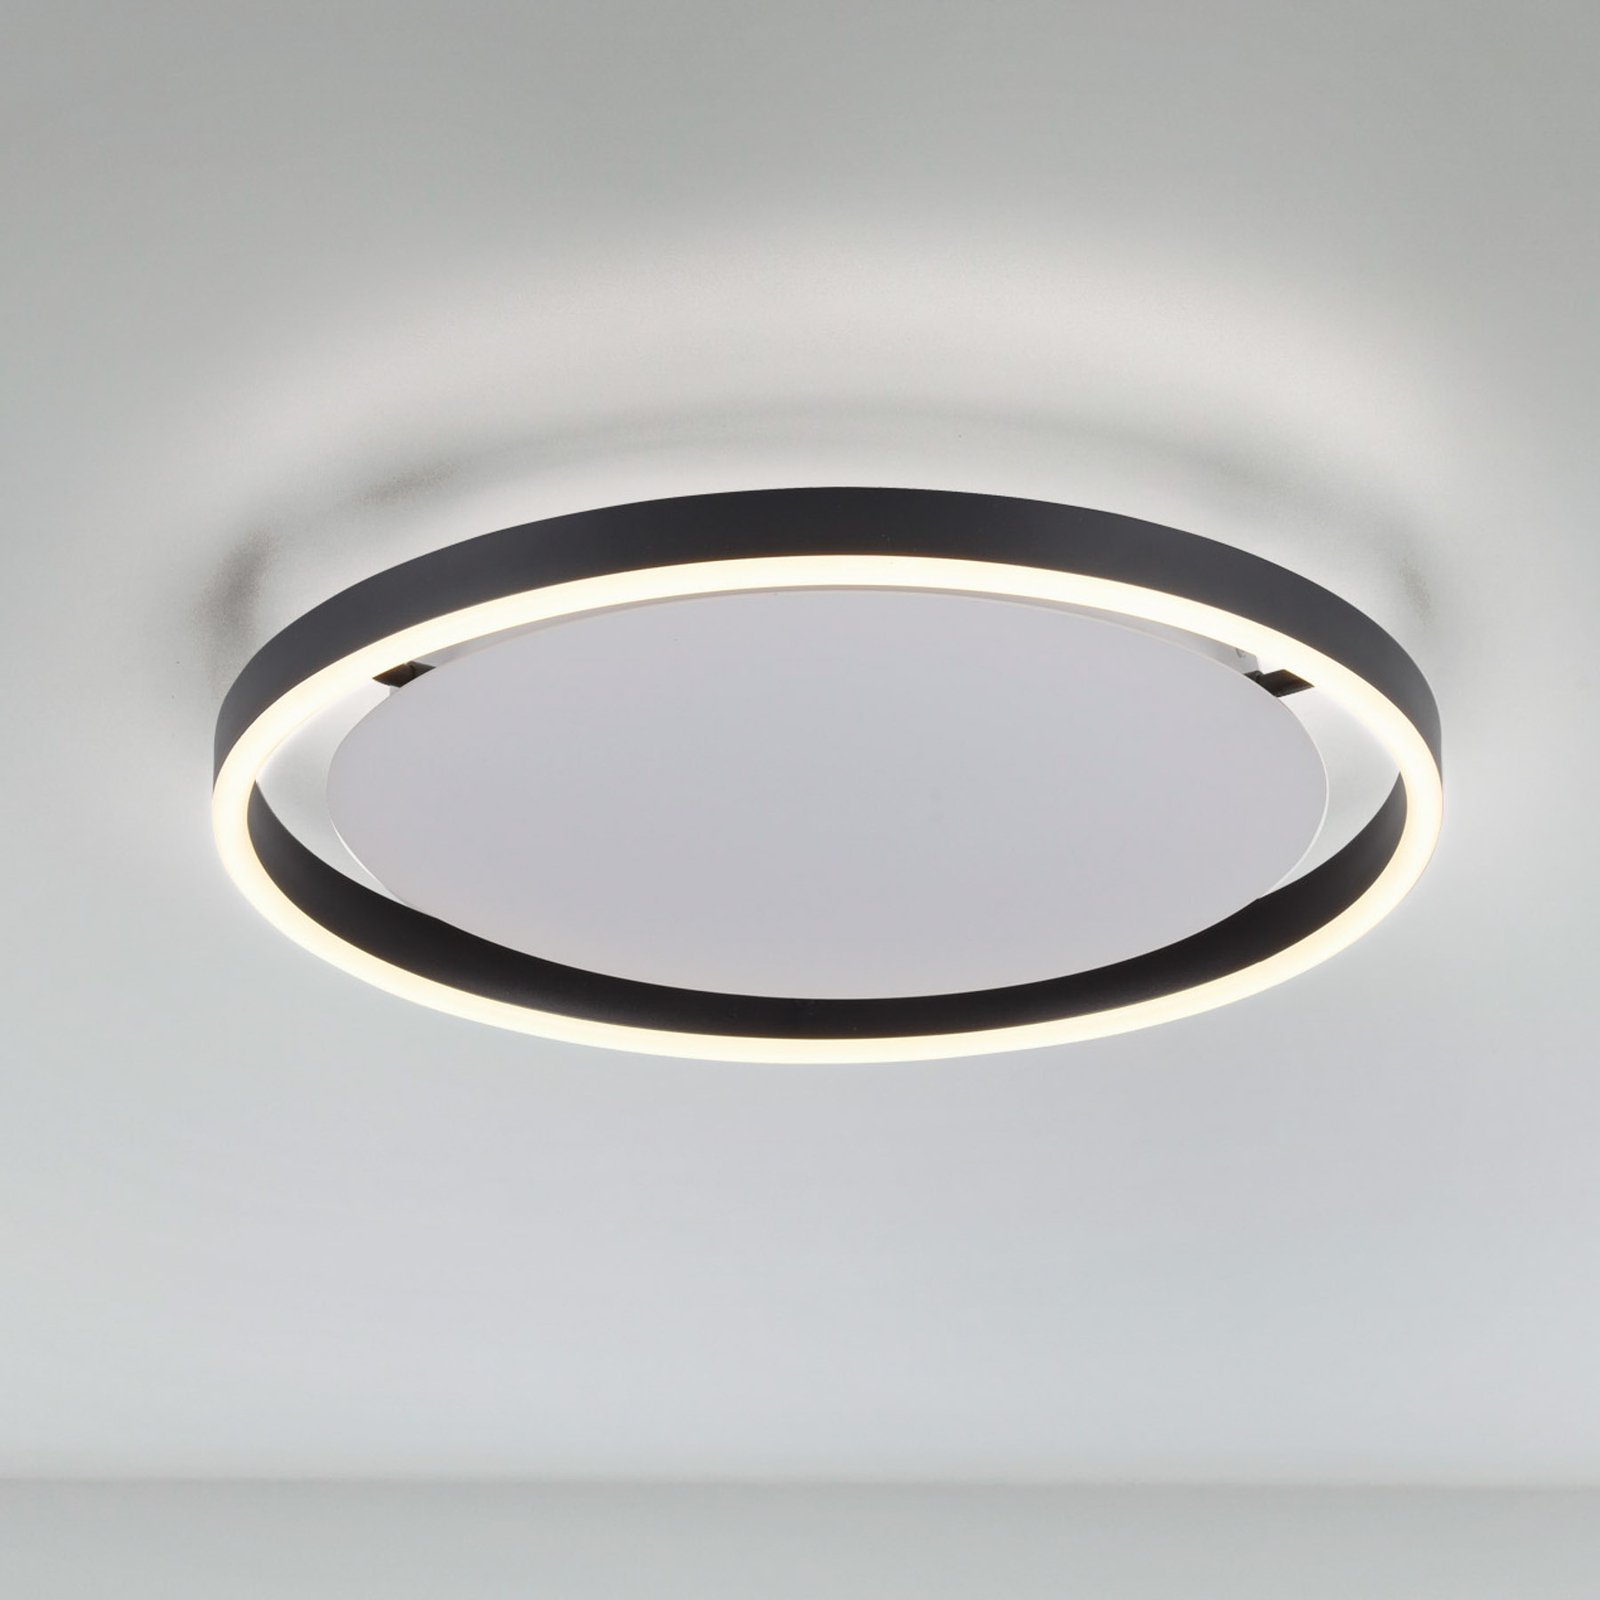 LED ceiling light Ritus, Ø 39.3cm, anthracite